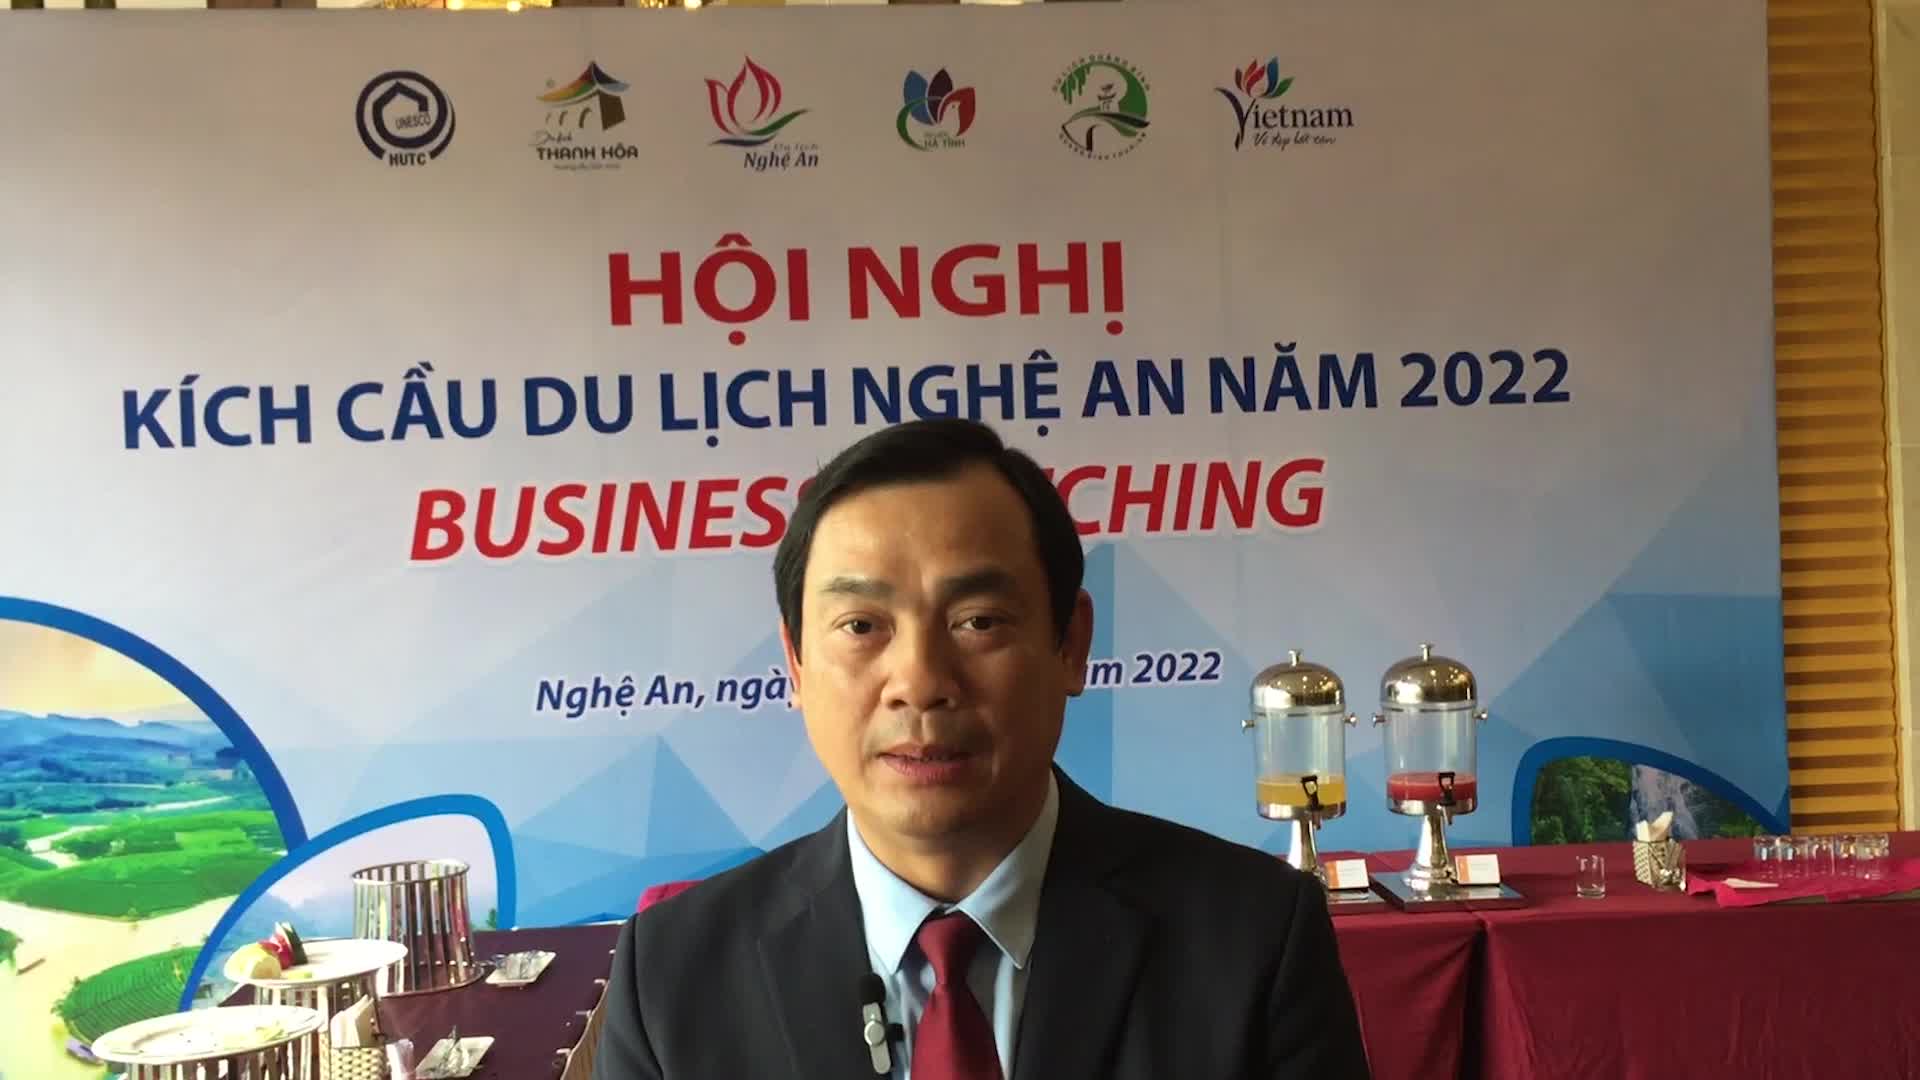 Kinh tế vĩ mô - Ông Nguyễn Trùng Khánh “mách nước” 6 nội dung để phát triển du lịch Nghệ An